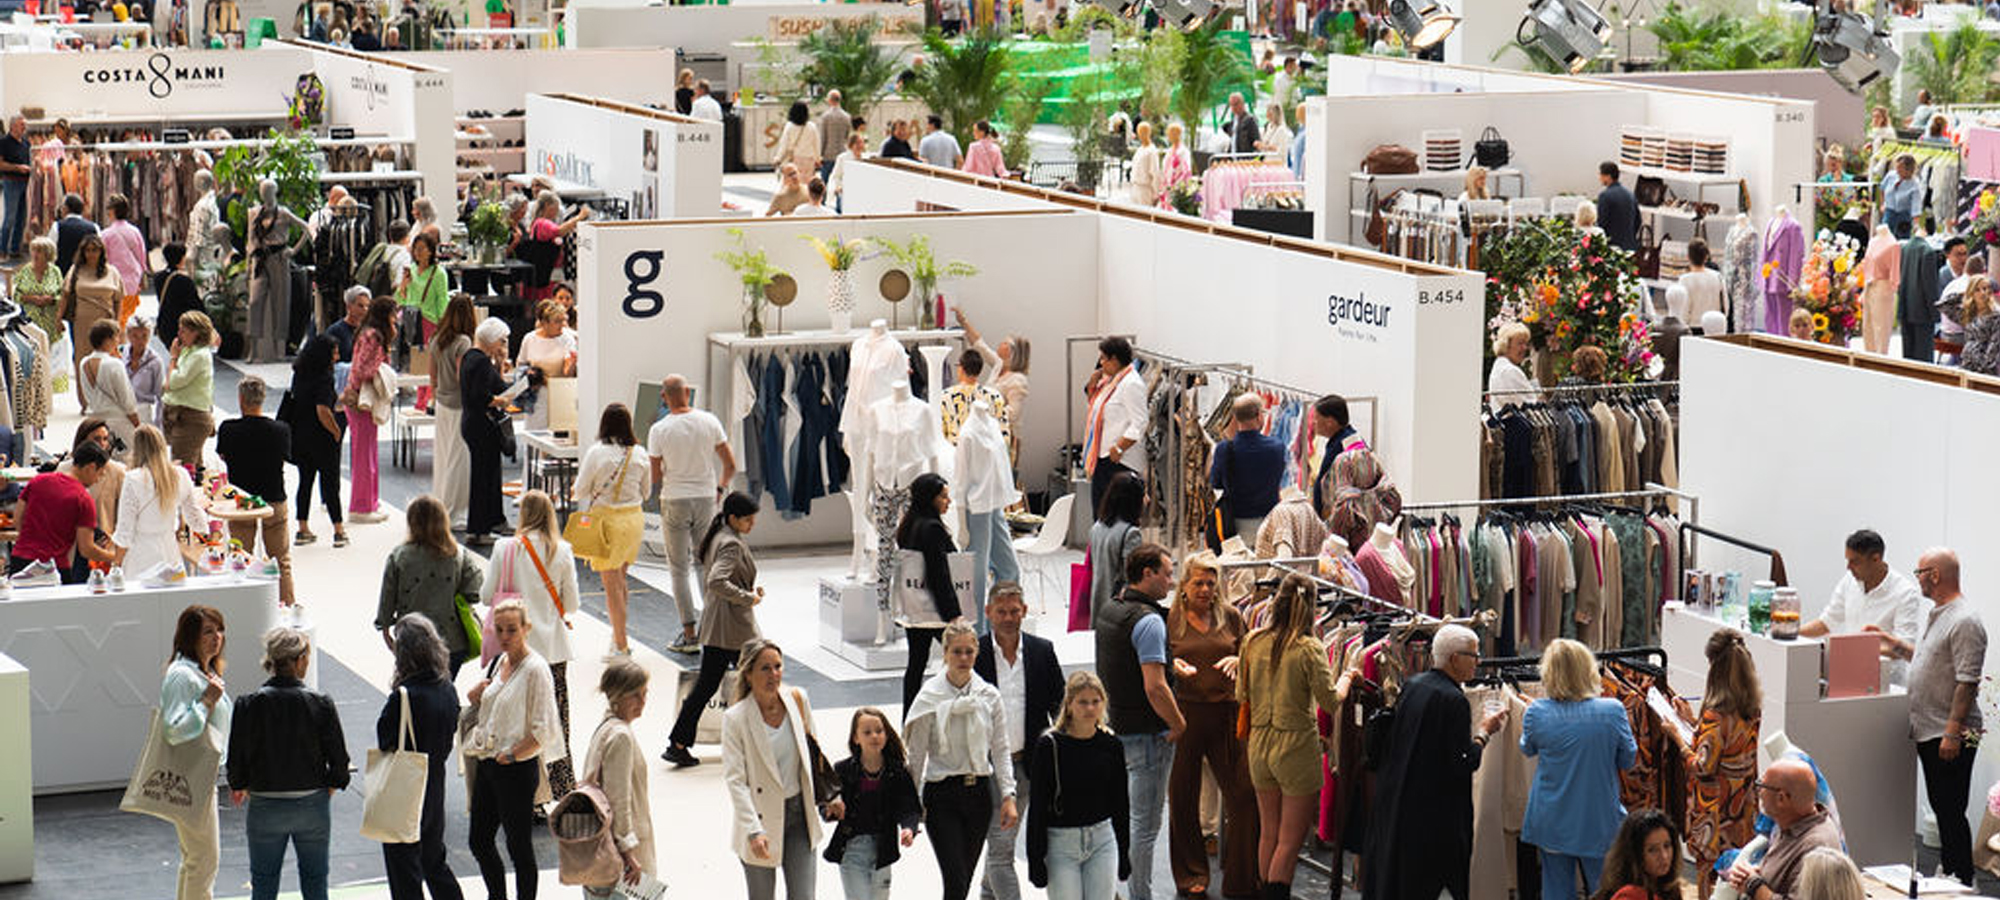 Together again! Modefabriek herenigt modewereld met topopkomst tijdens 2022 editie.